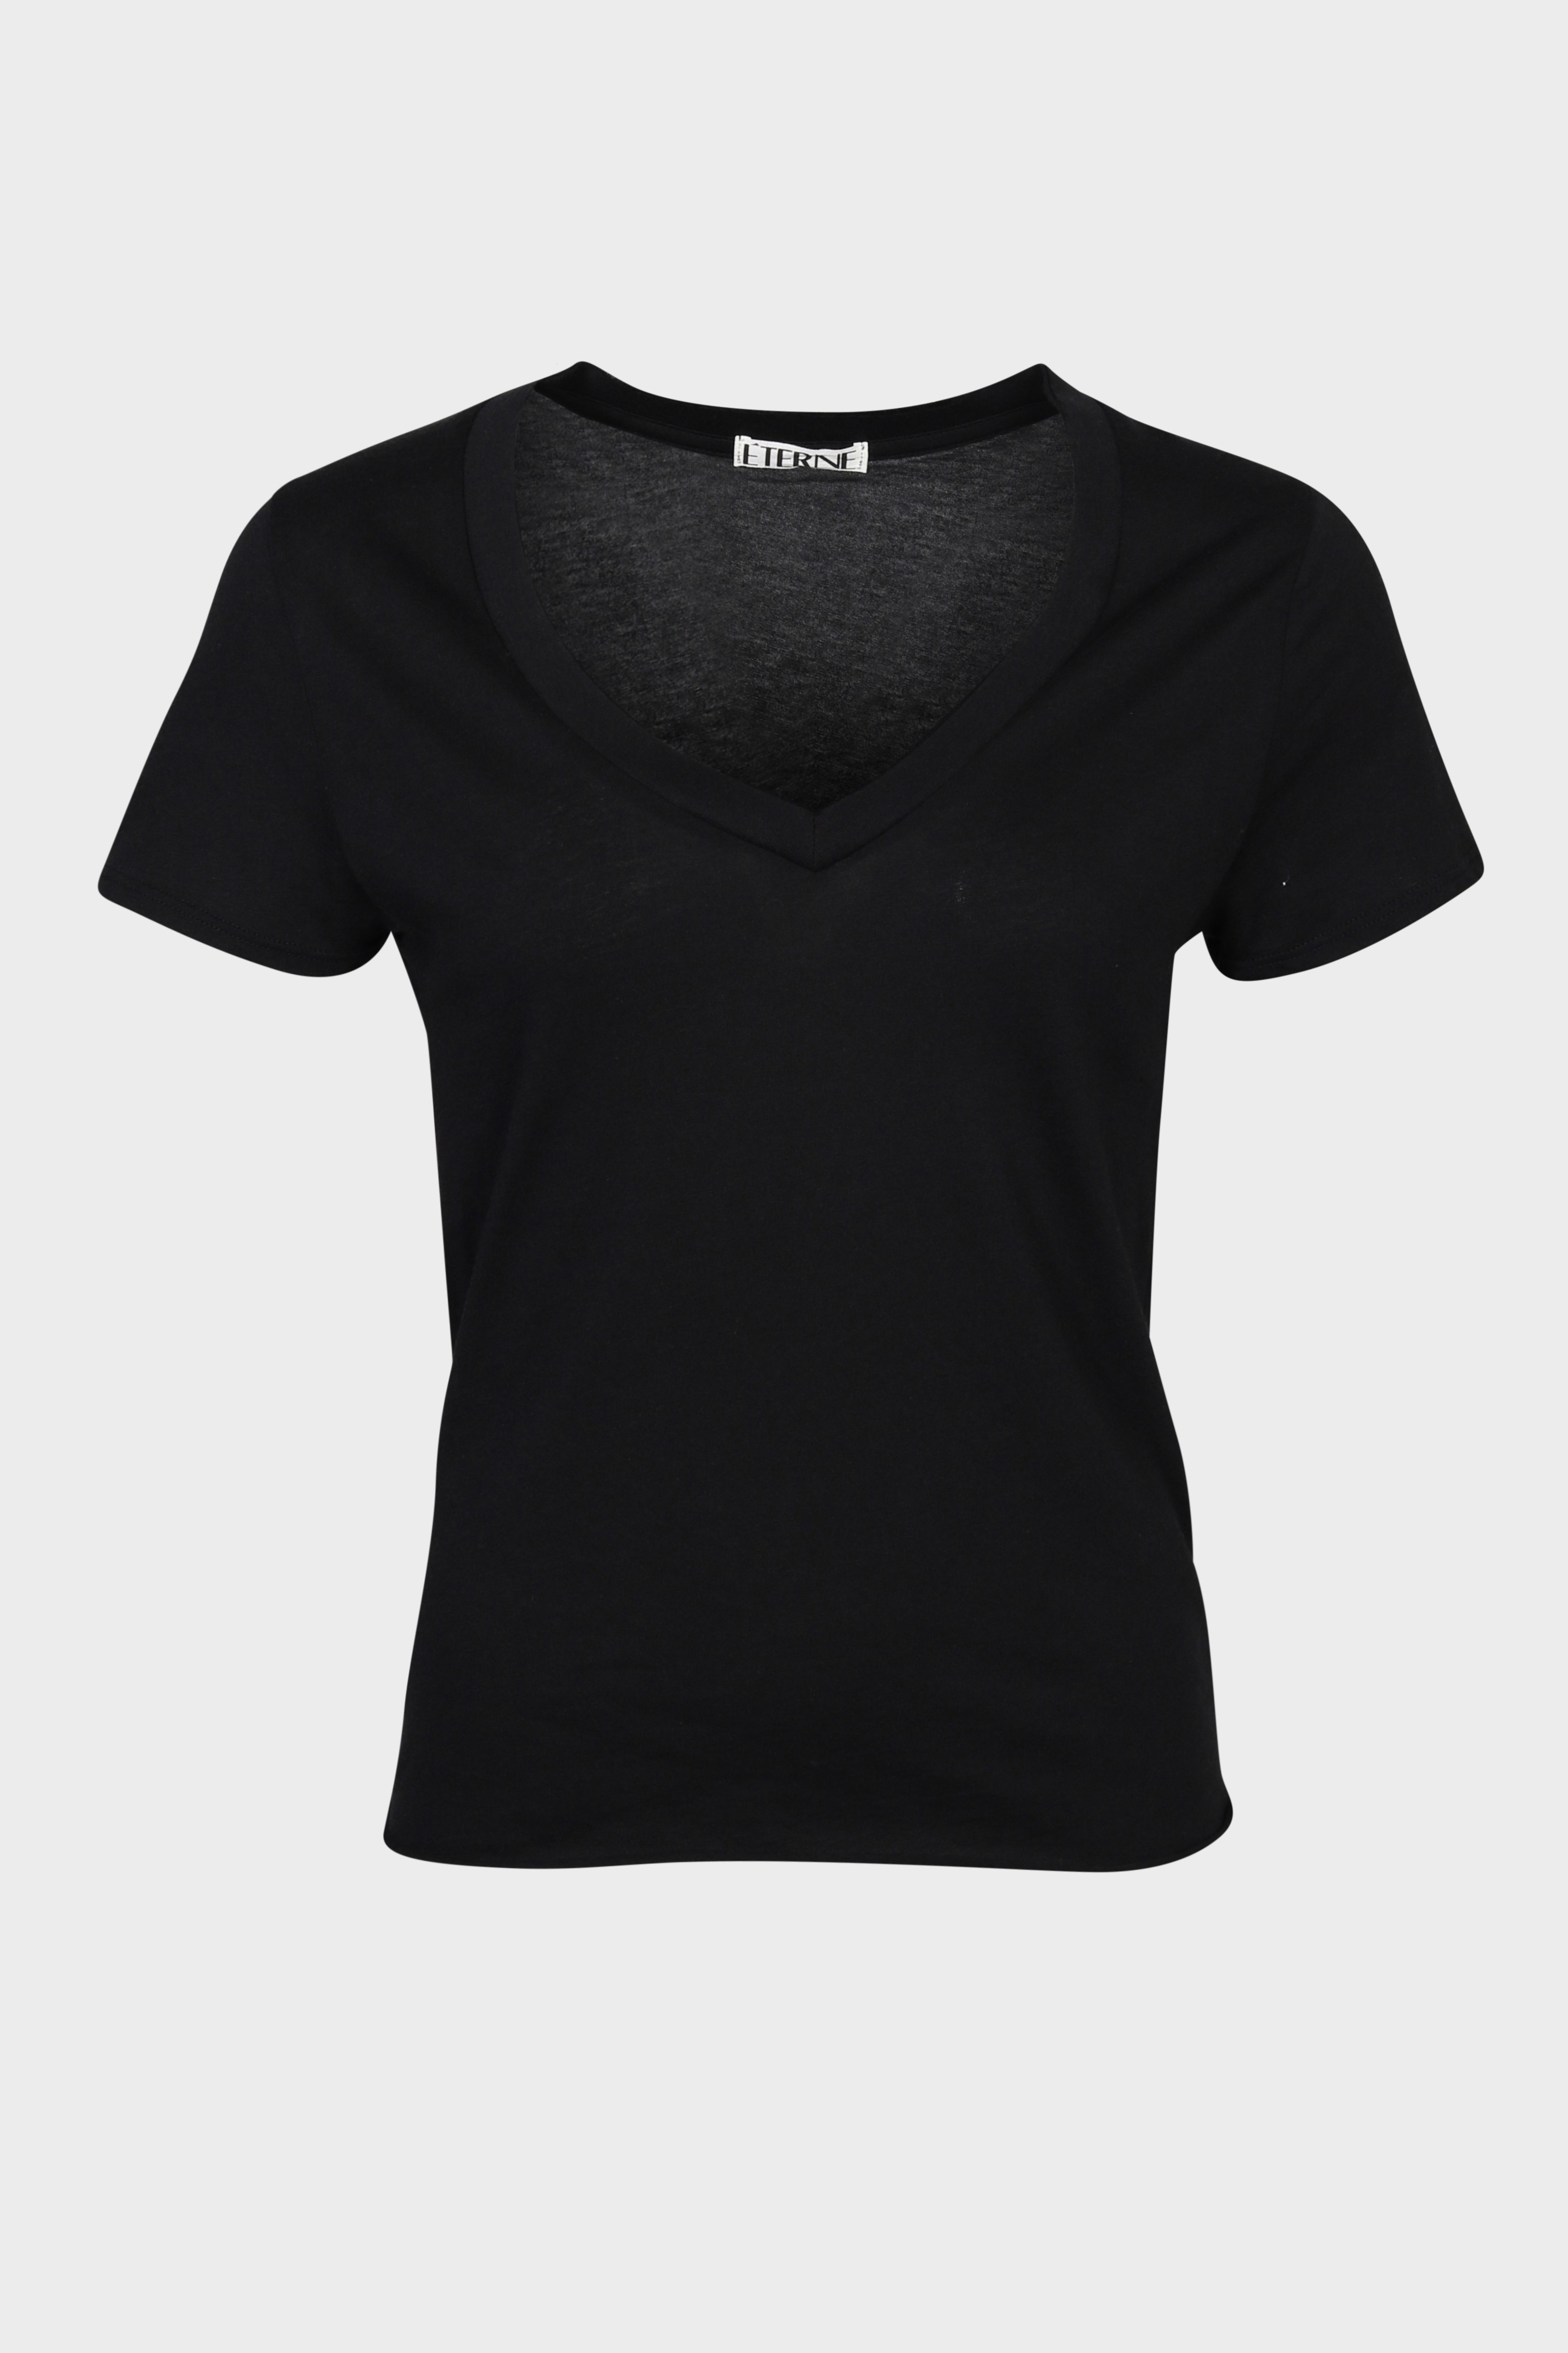 ÉTERNE V-Neck T-Shirt in Black L